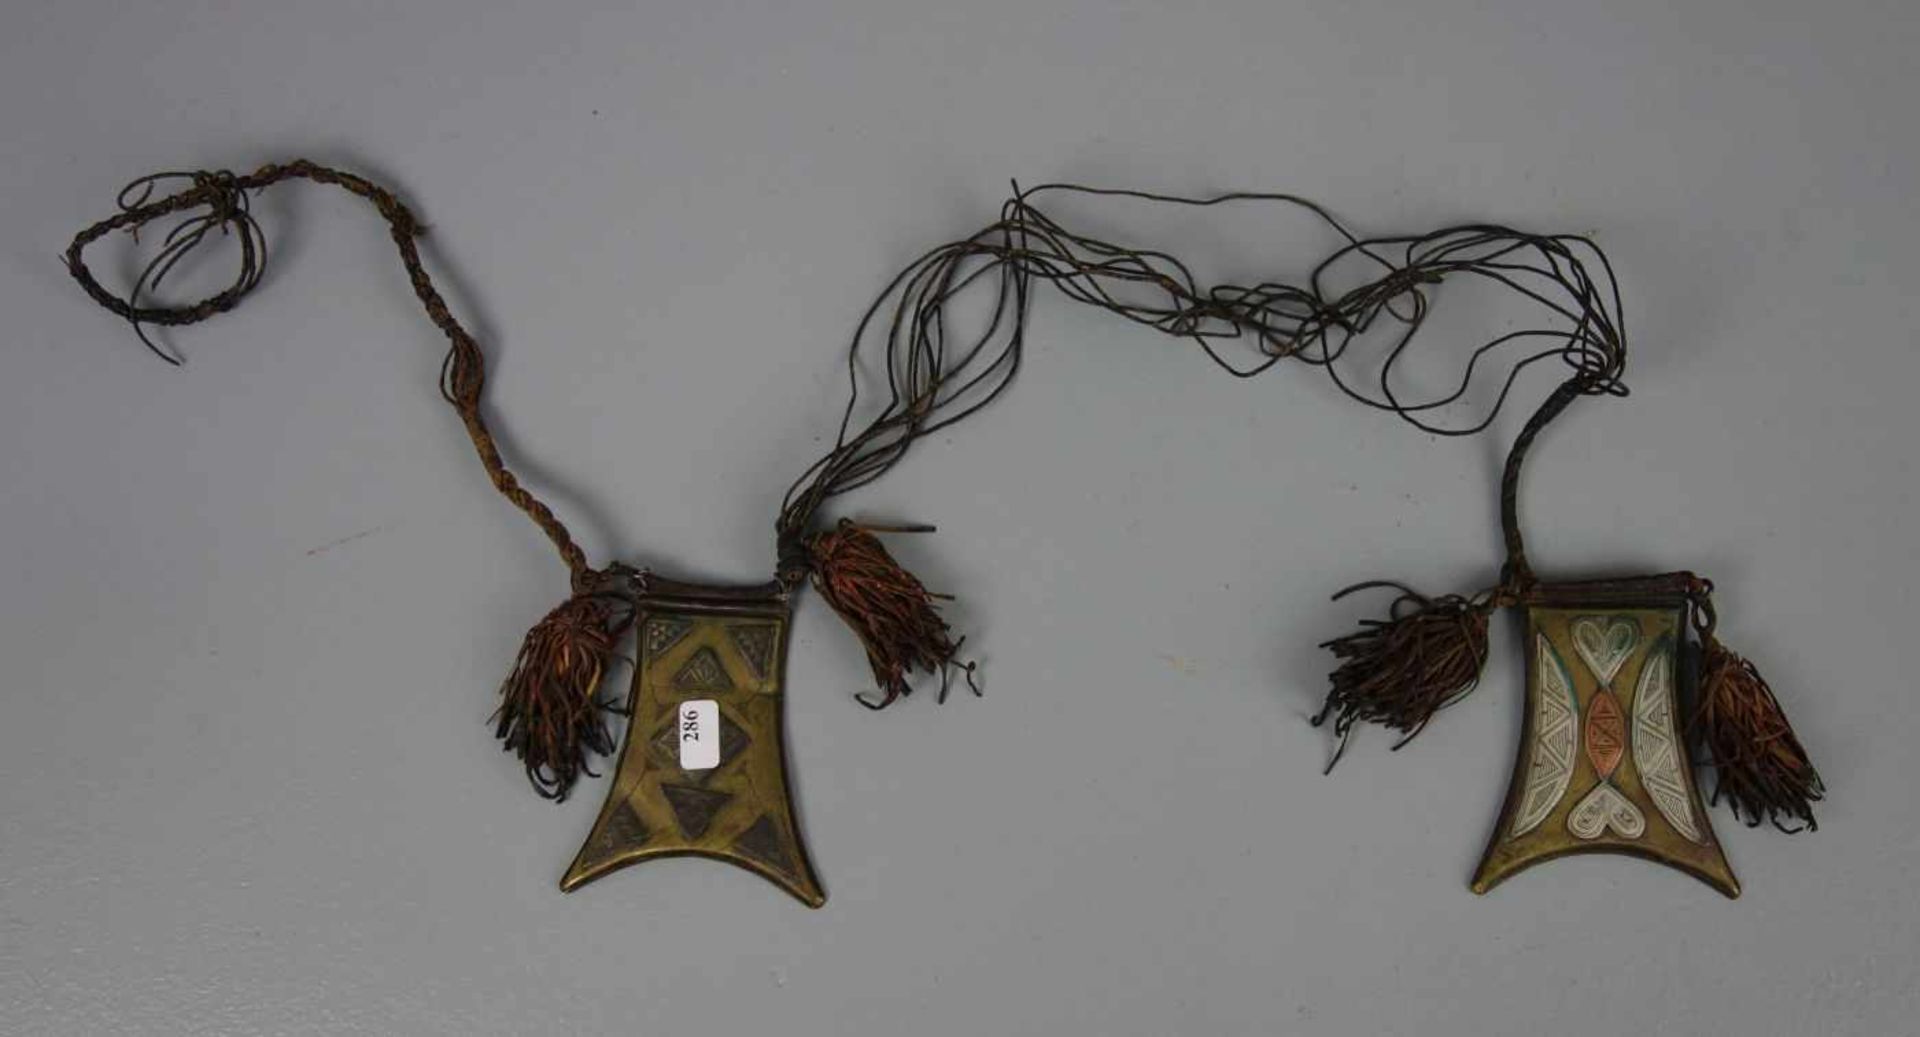 BERBER-SCHMUCK: PAAR AMULETTE MIT LEDERKETTE, Marokko, 20. Jh. Zwei Metall-Amulette in gleichem